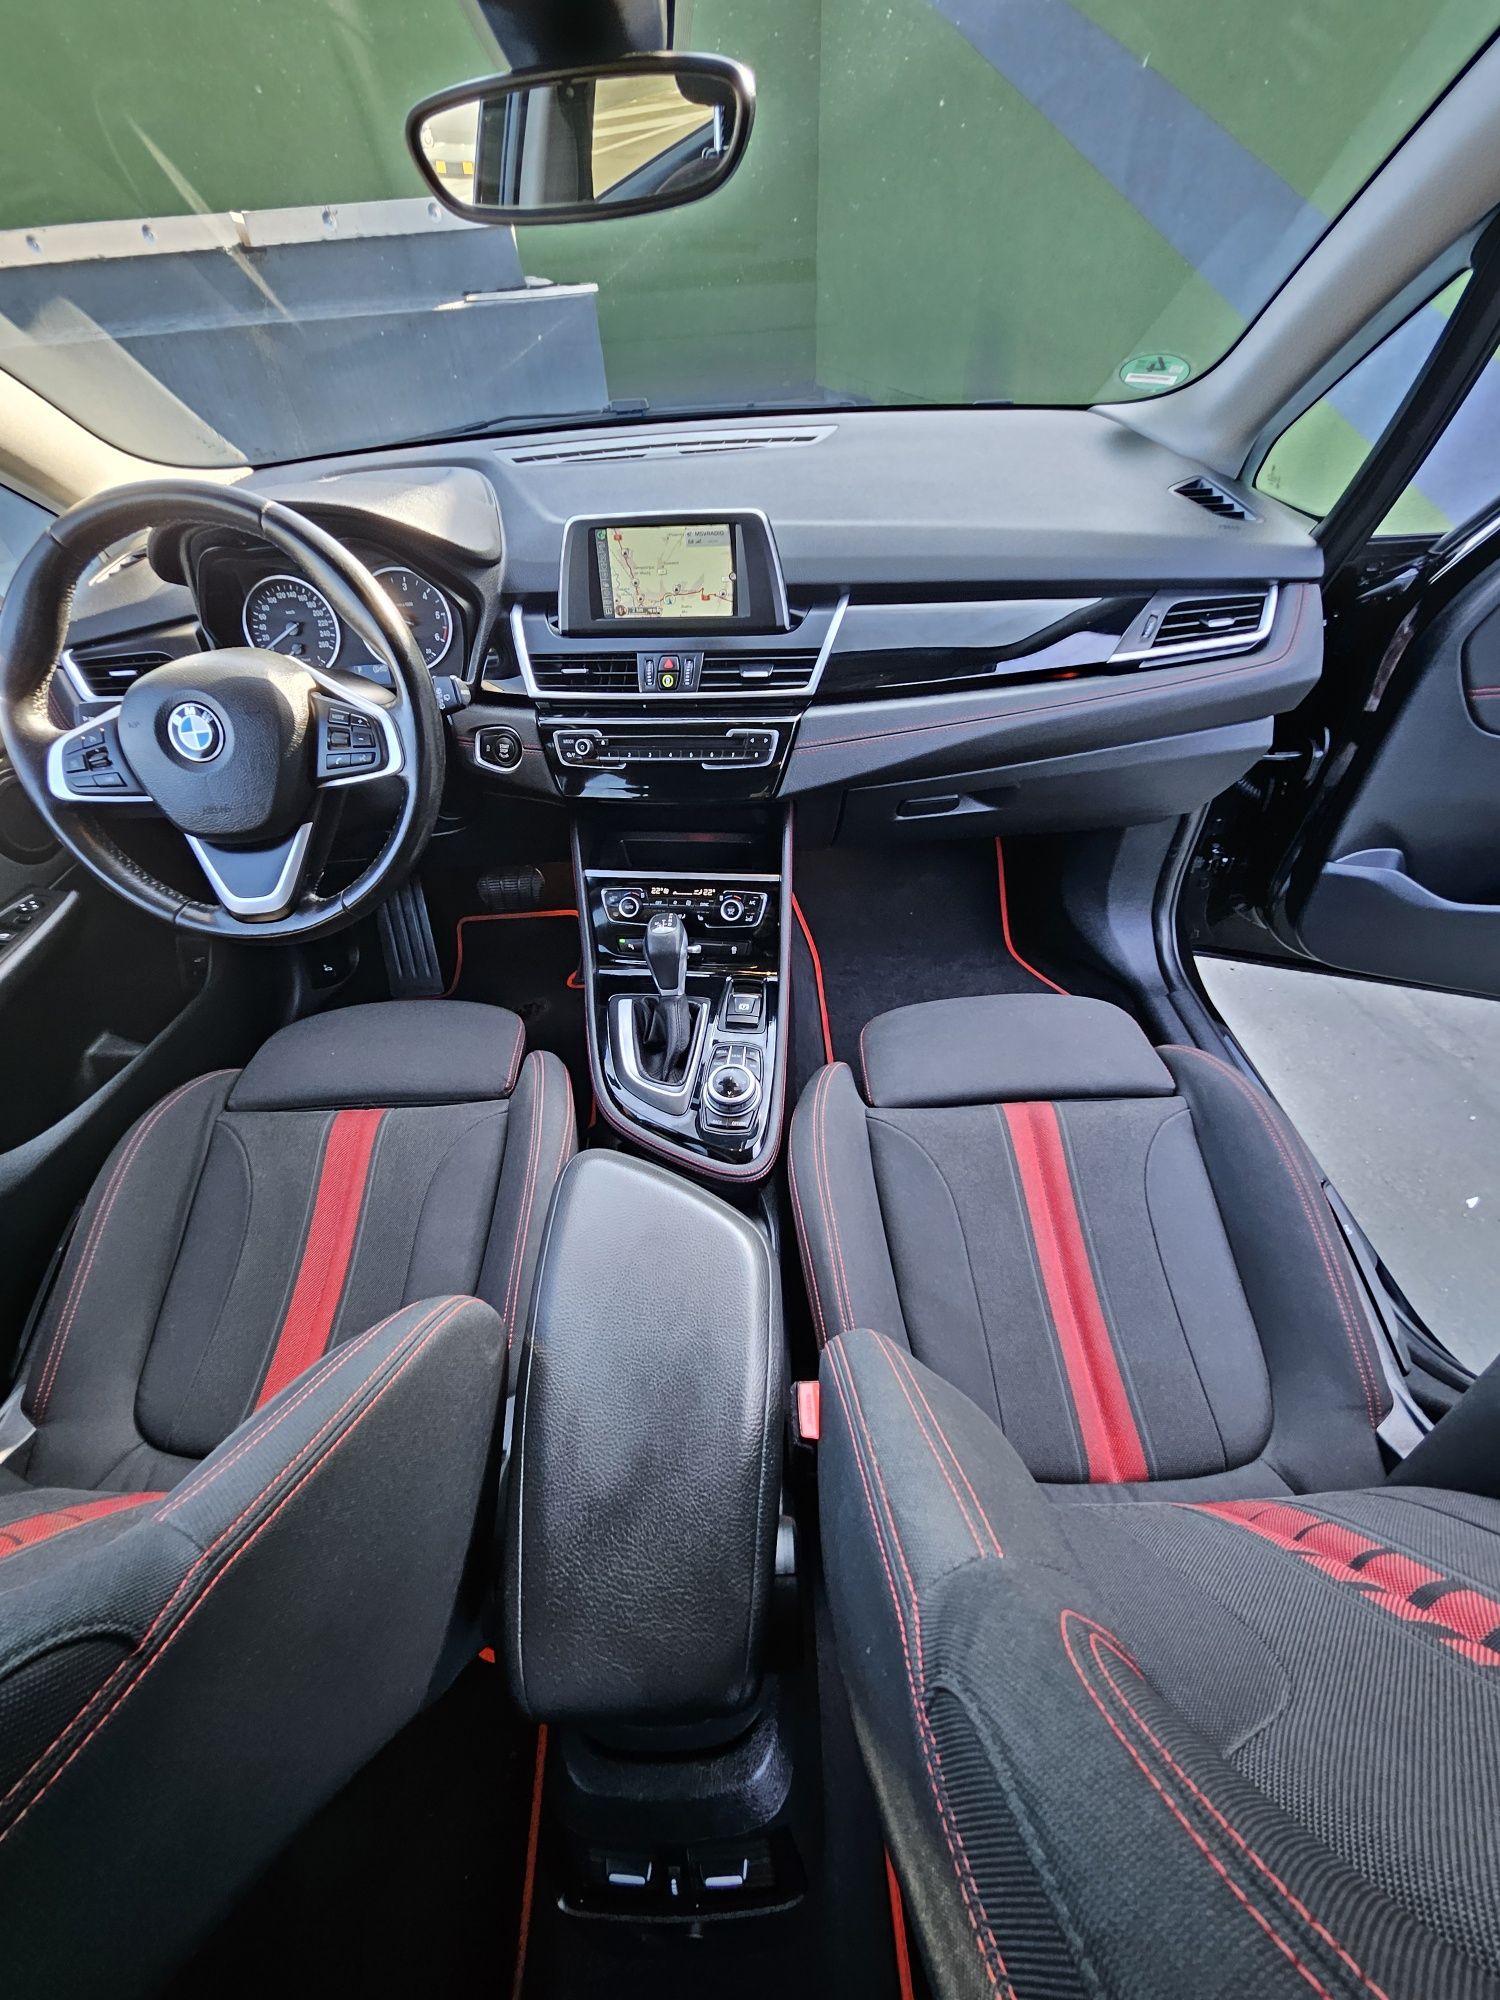 BMW 218d 150 CP 2018